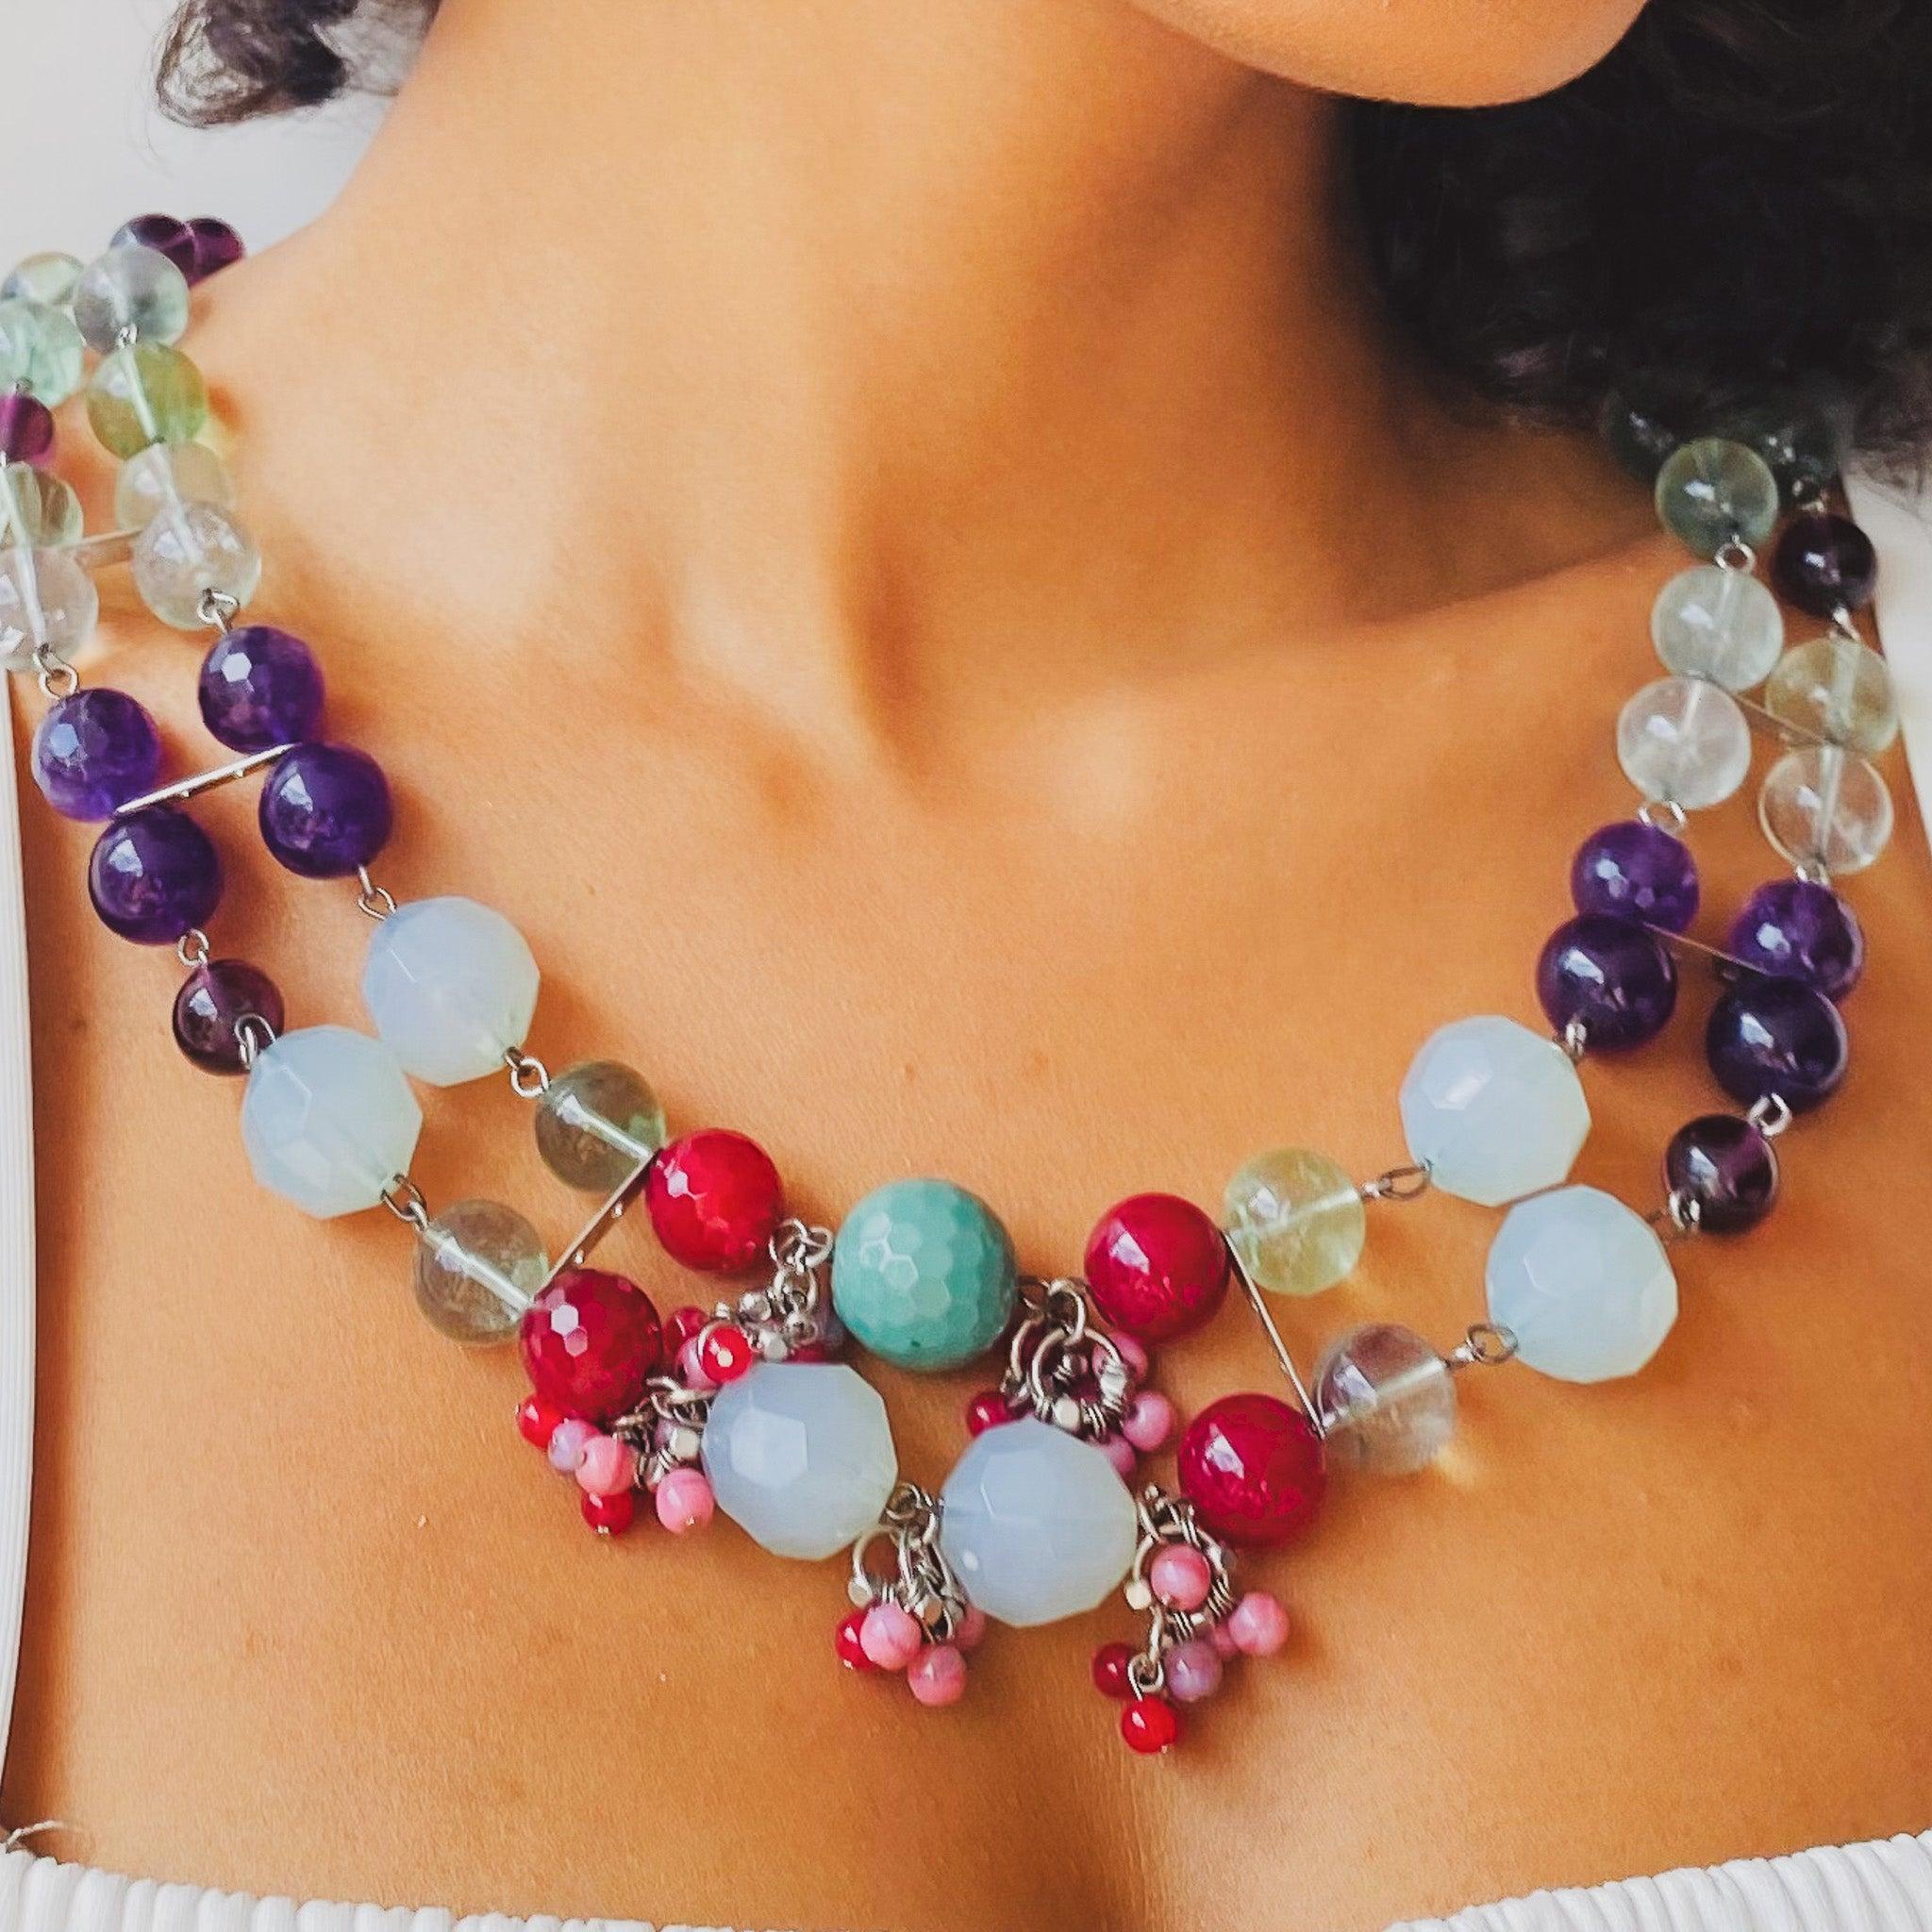 Umgestaltete Vintage-Perlenkette, 1980er Jahre

Wunderschöne venezianische Glasperlen, die von einer vernachlässigten Halskette gerettet und in dieses unglaubliche Schmuckstück verwandelt wurden!

Wir haben eine Null-Abfall-Politik, wenn es um